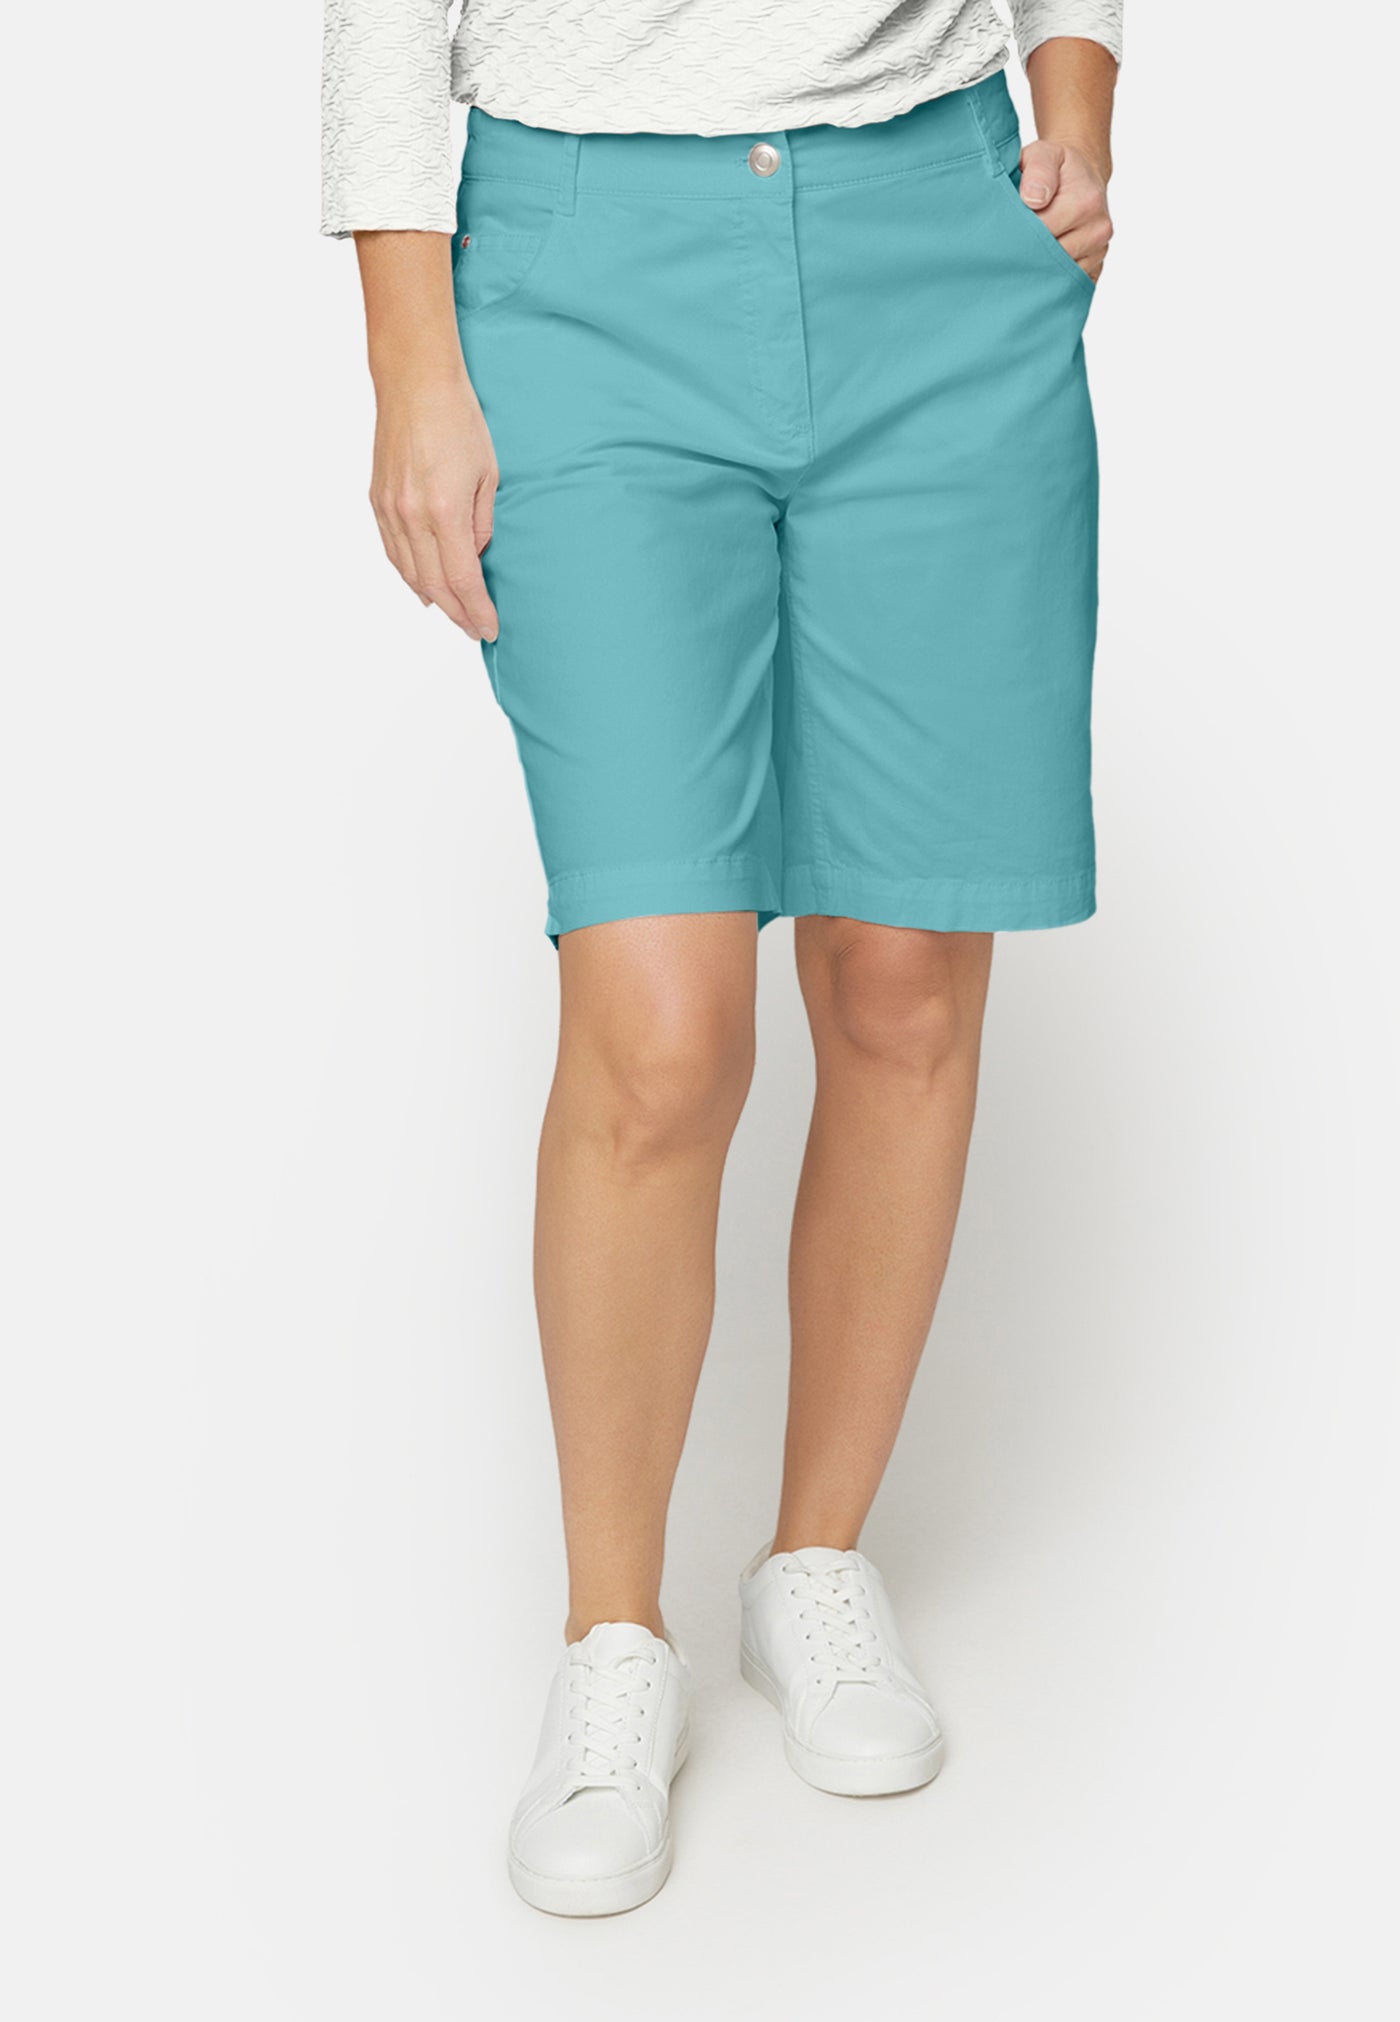 Shorts - Turquoise Blue